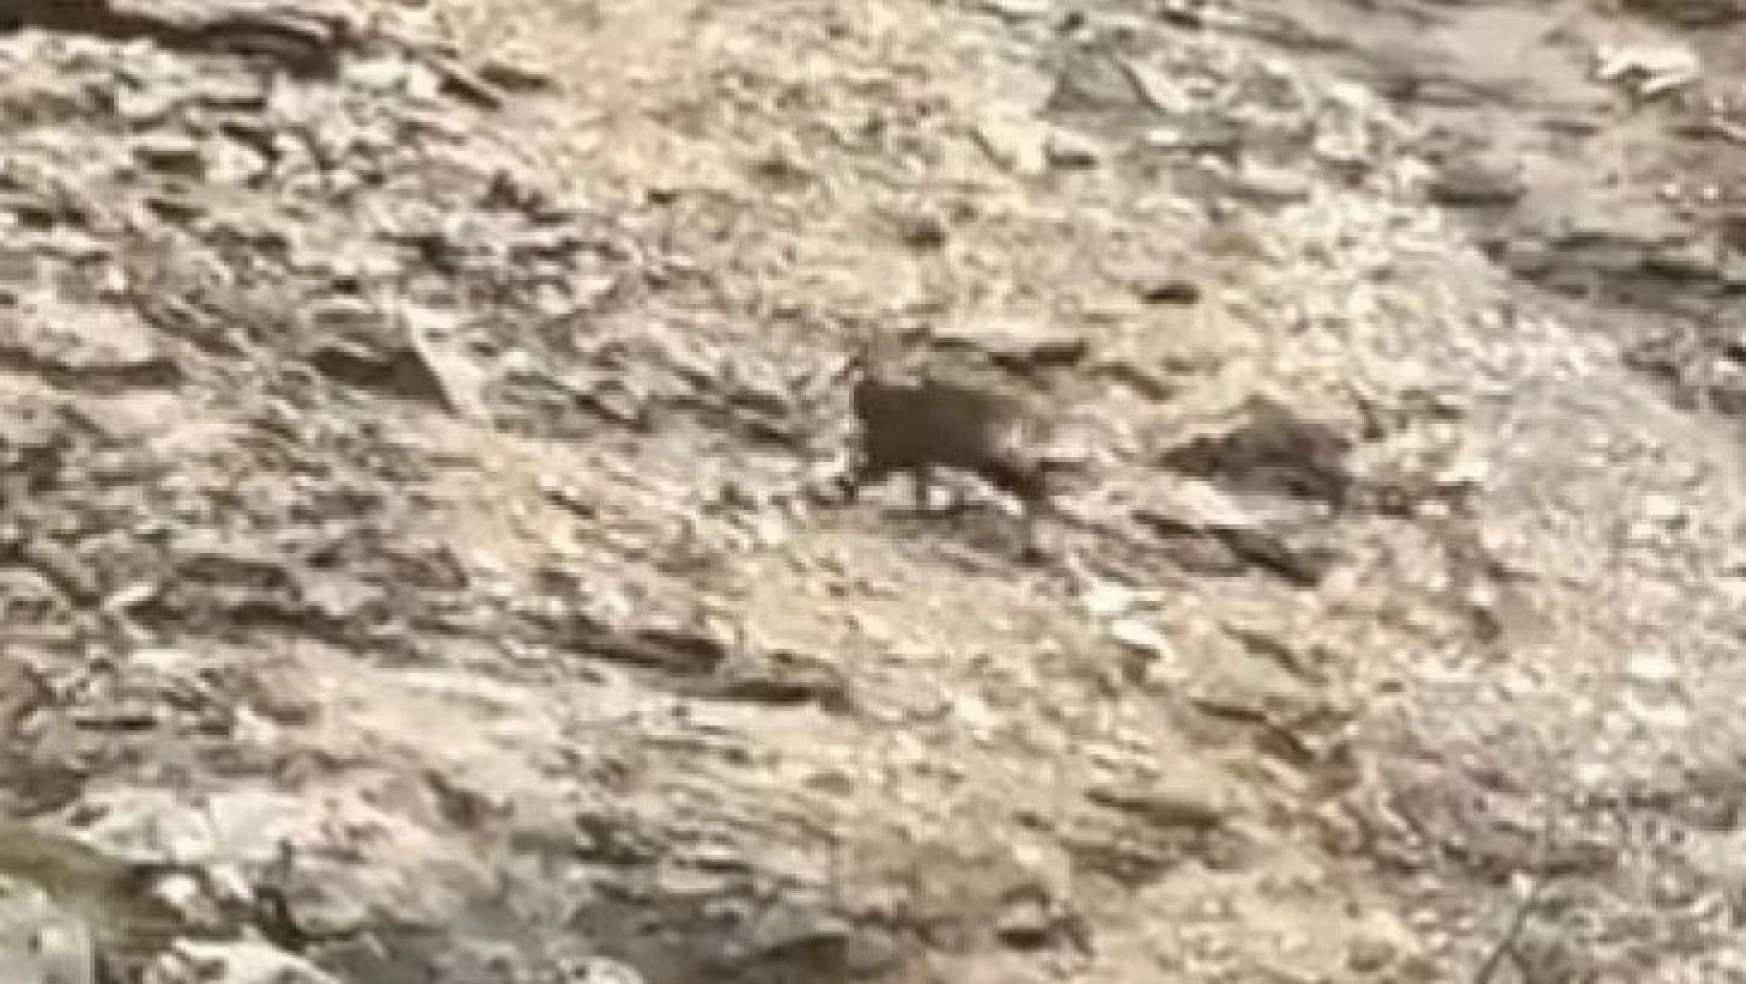 Tunceli'de çengel boynuzlu dağ keçileri görüntülendi